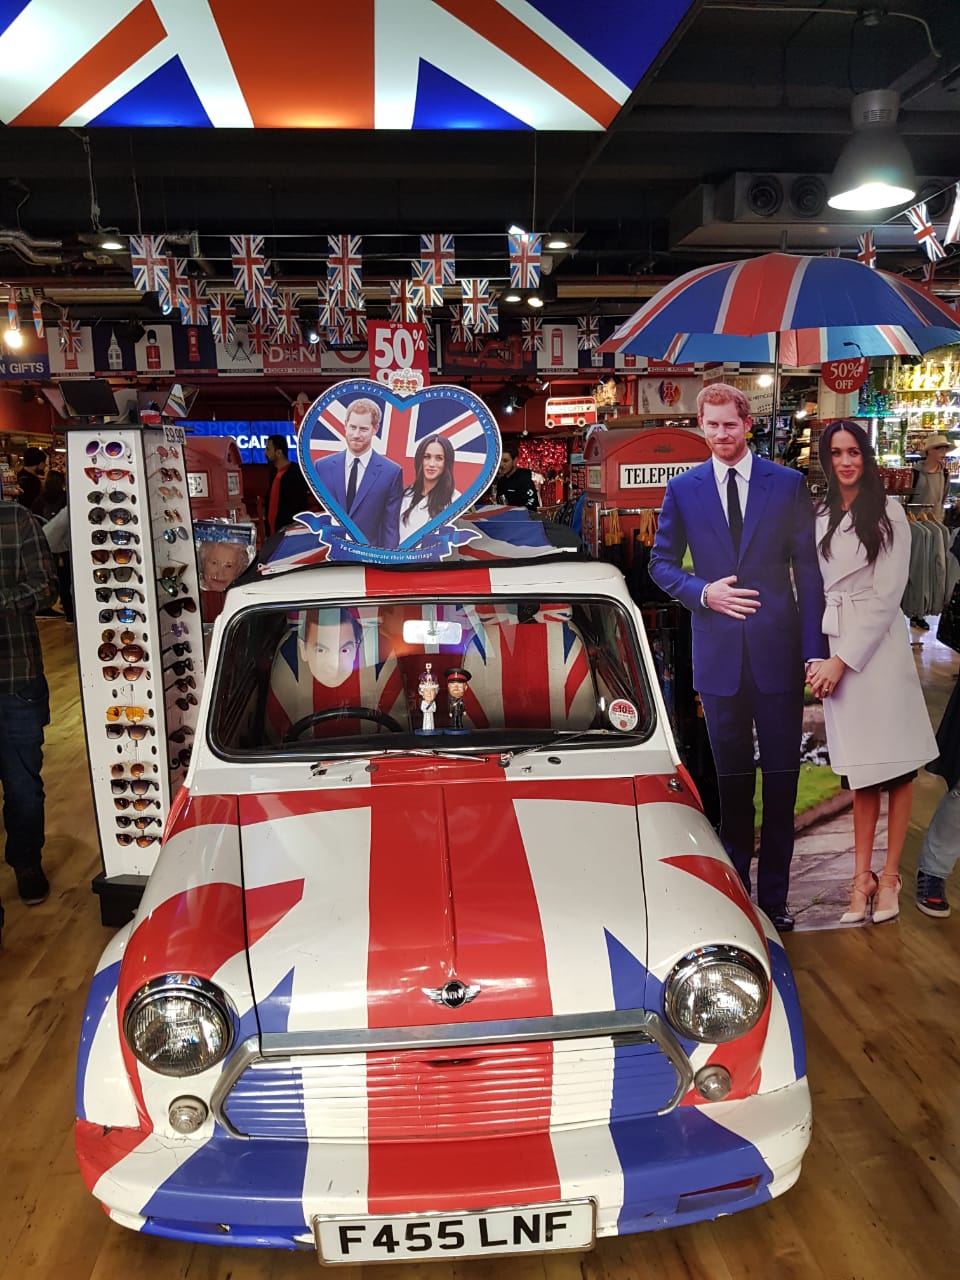 Loja de souvenir em Londres preparada para o casamento real do príncipe Harry com Meghan Markle